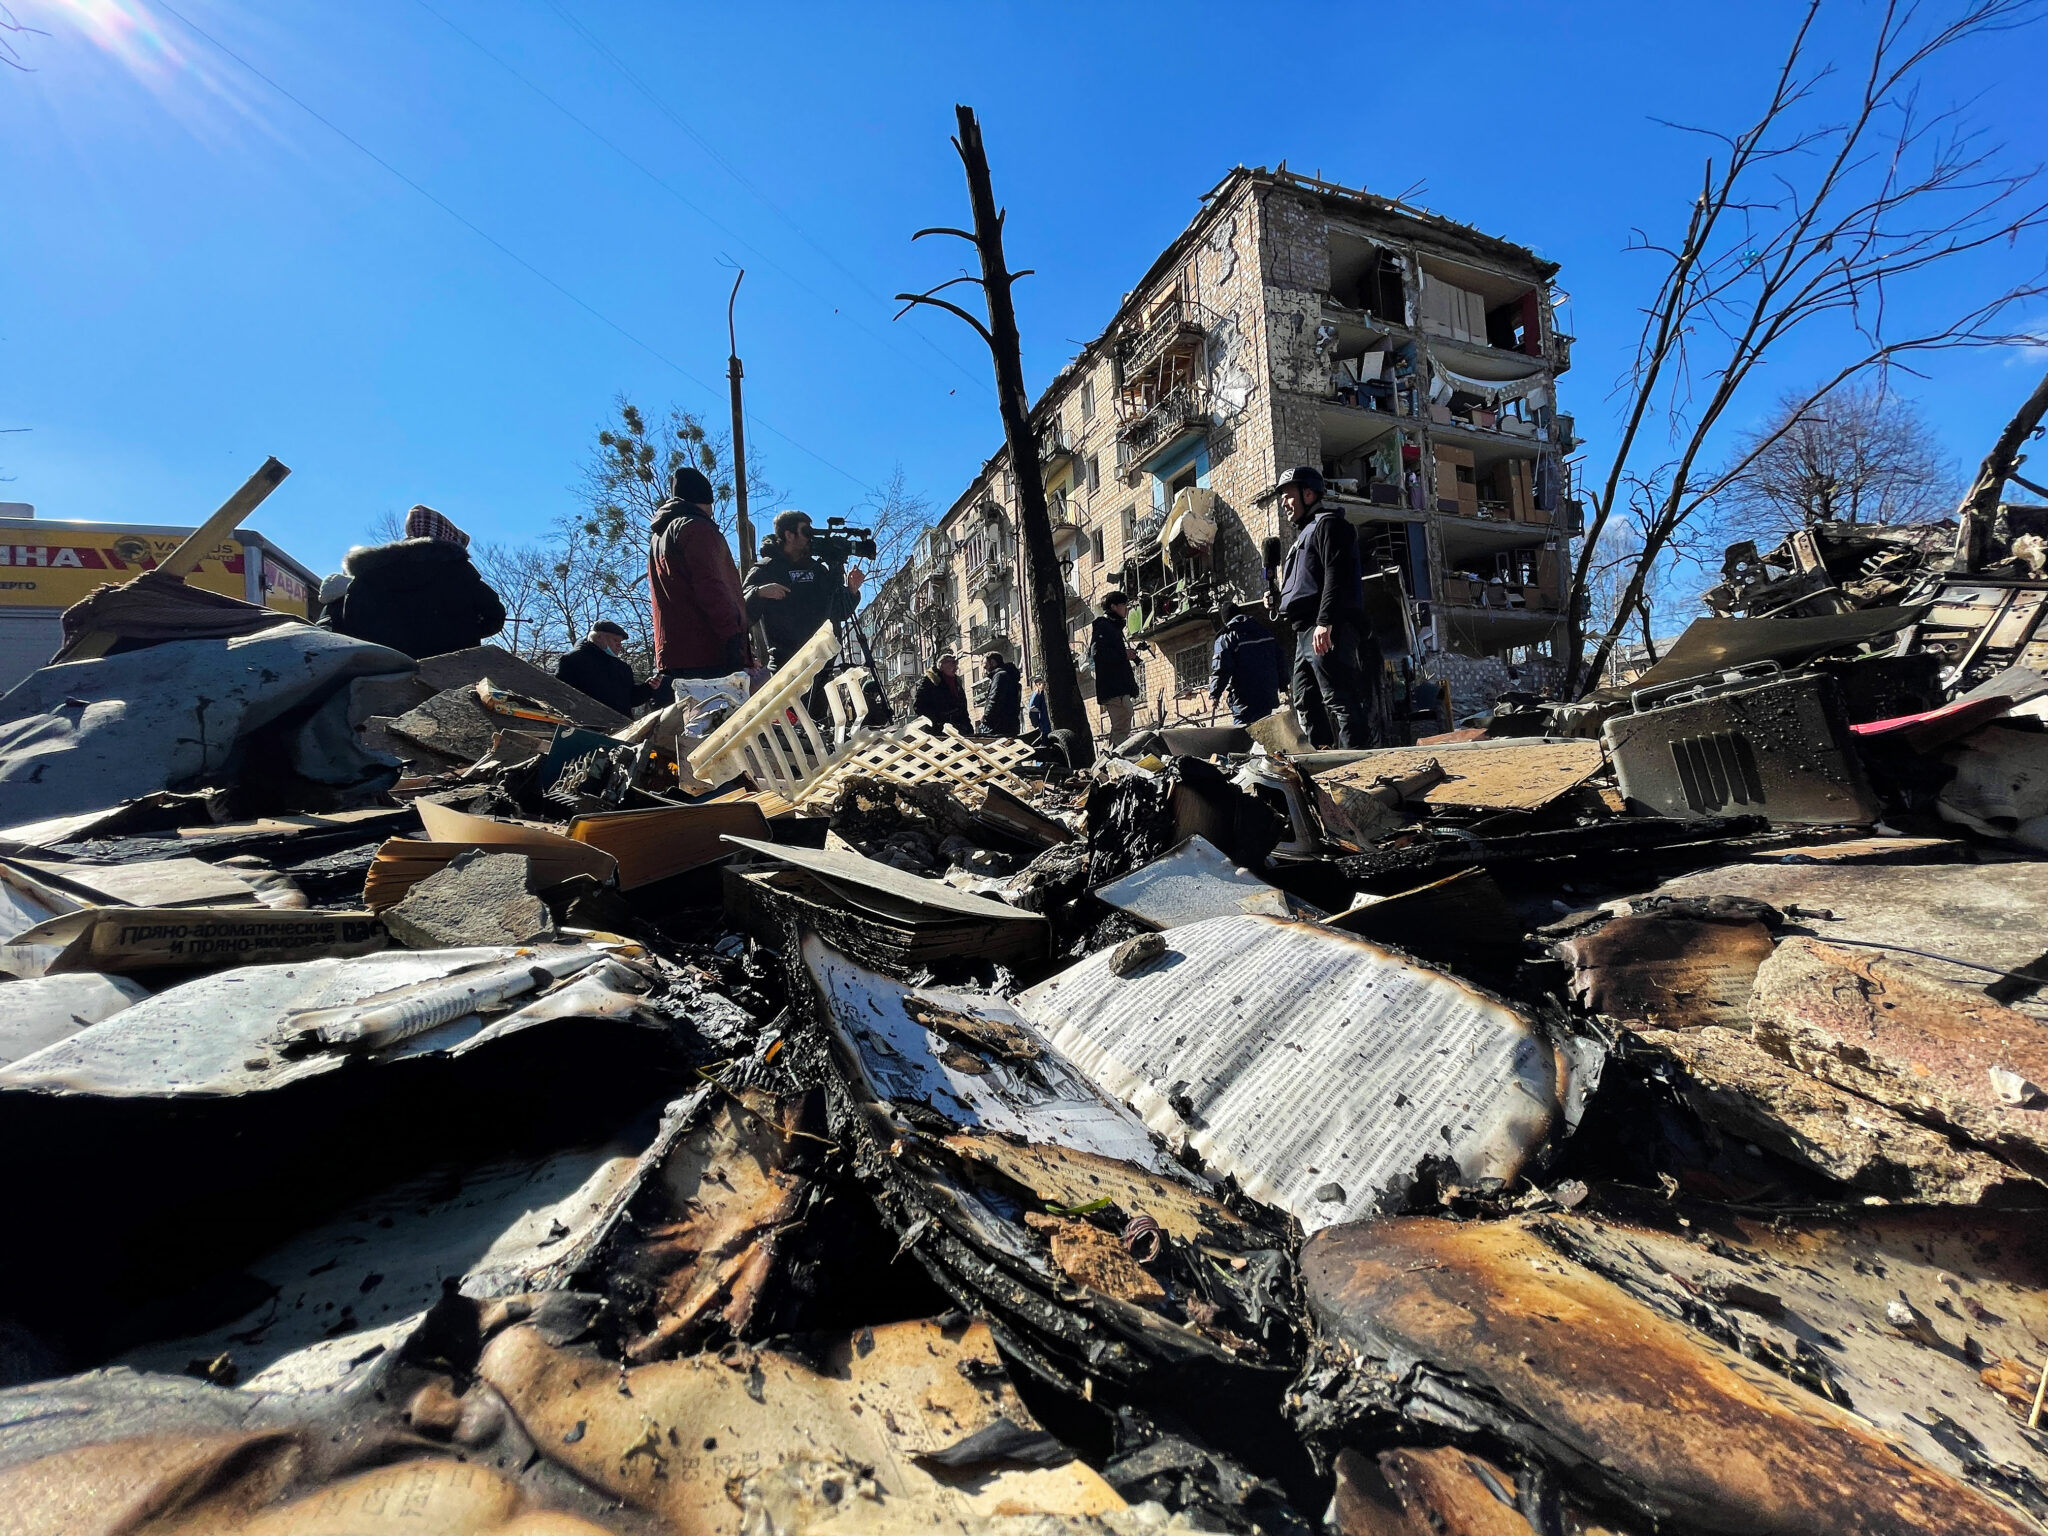 Разрушенный жилой дом после ракетного обстрела в Киеве. 18 марта 2022 года. Фото Mohammad Javad Abjoushak/SOPA Images via ZUMA Press Wire/Scanpix /Leta